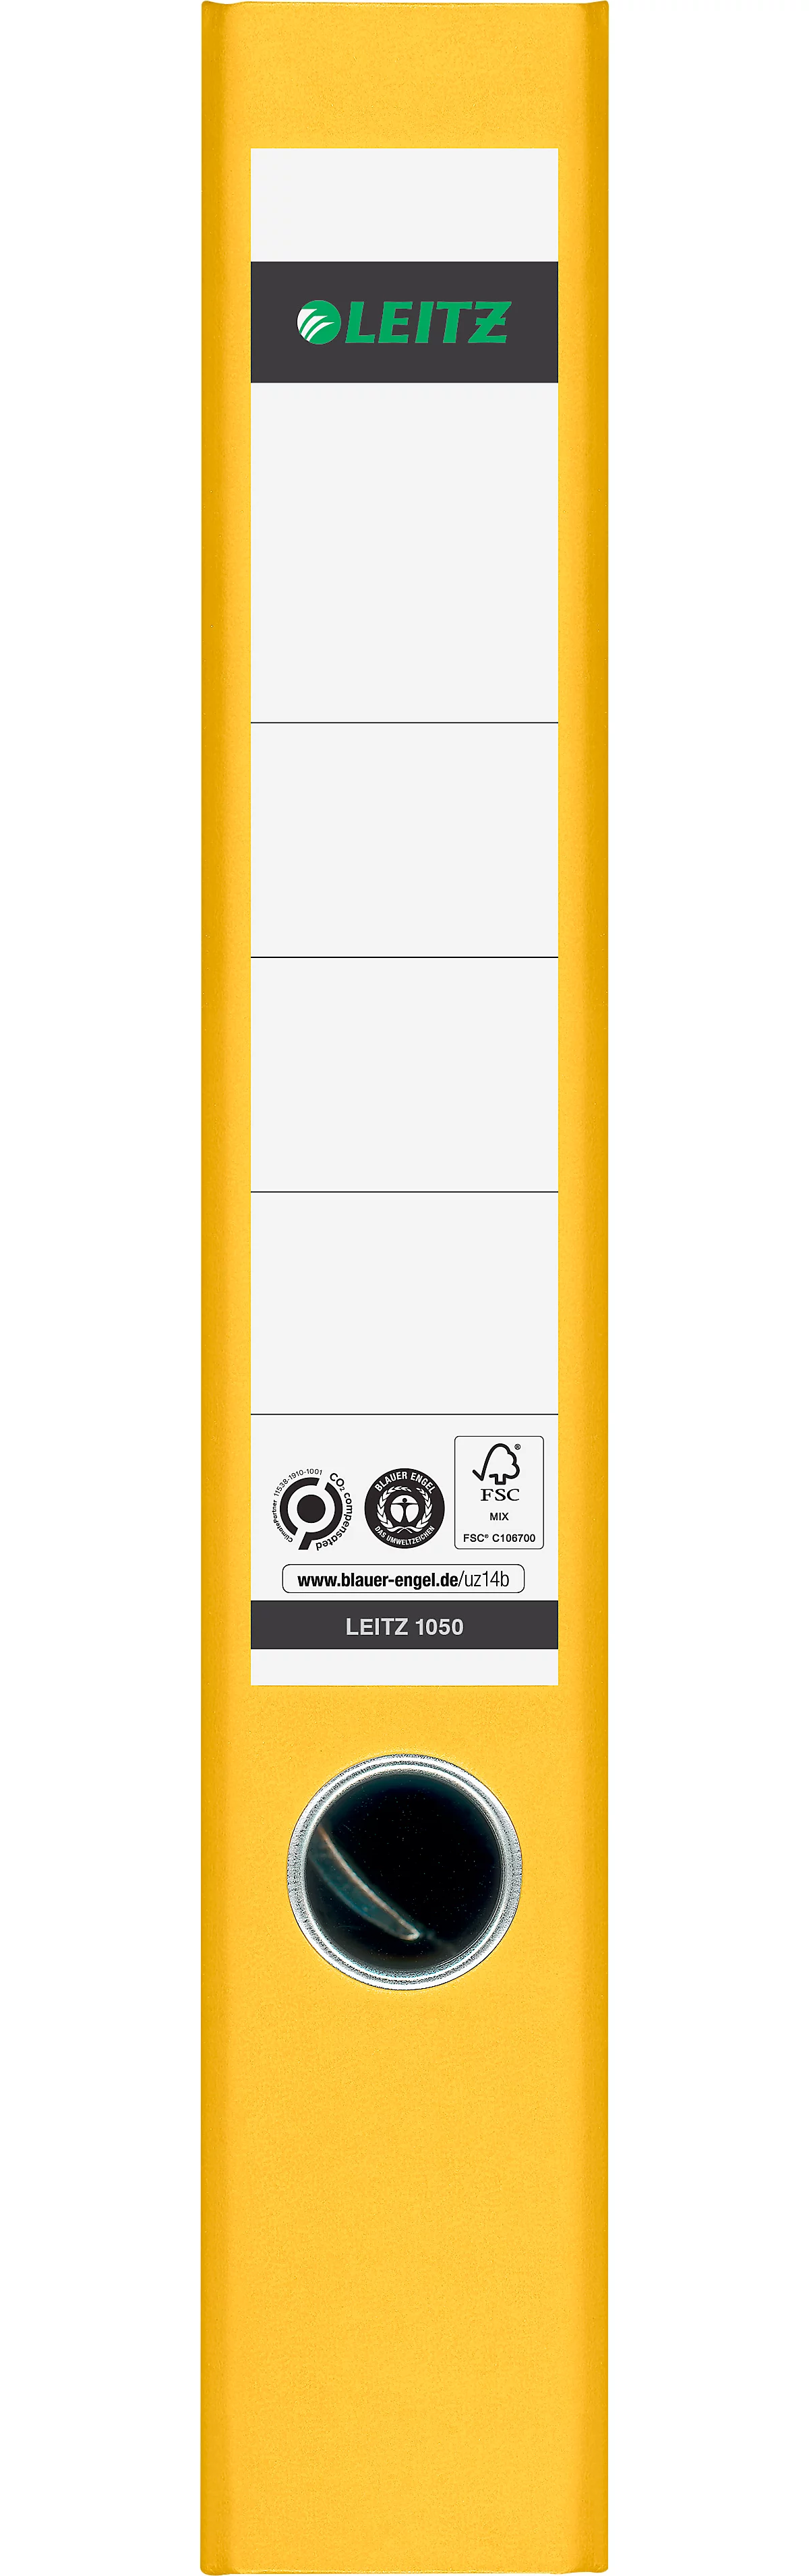 LEITZ® Ordner 1050, DIN A4, Rückenbreite 52 mm, gelb